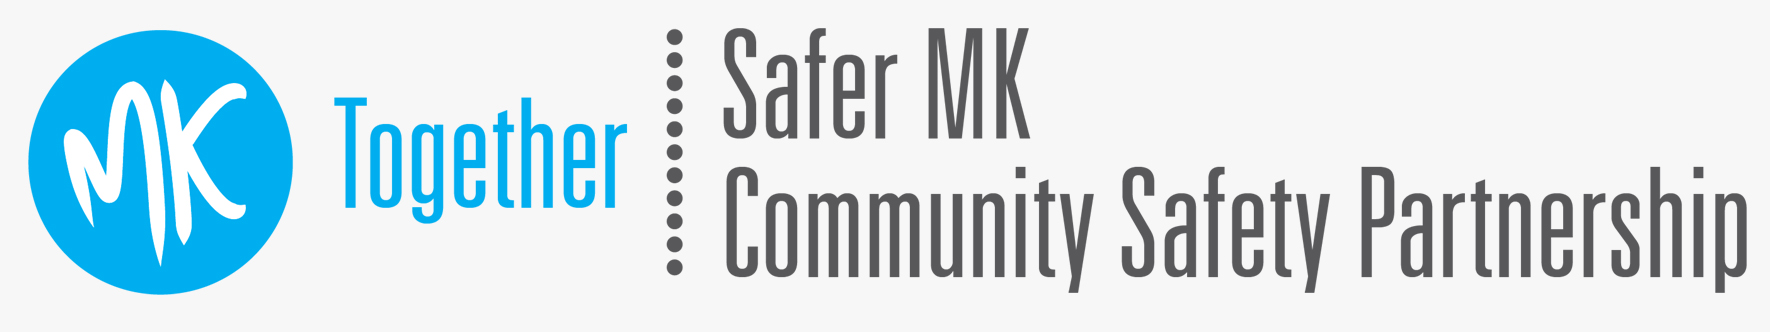 MK Together logo incorporating Safer MK Community Safety Partnership